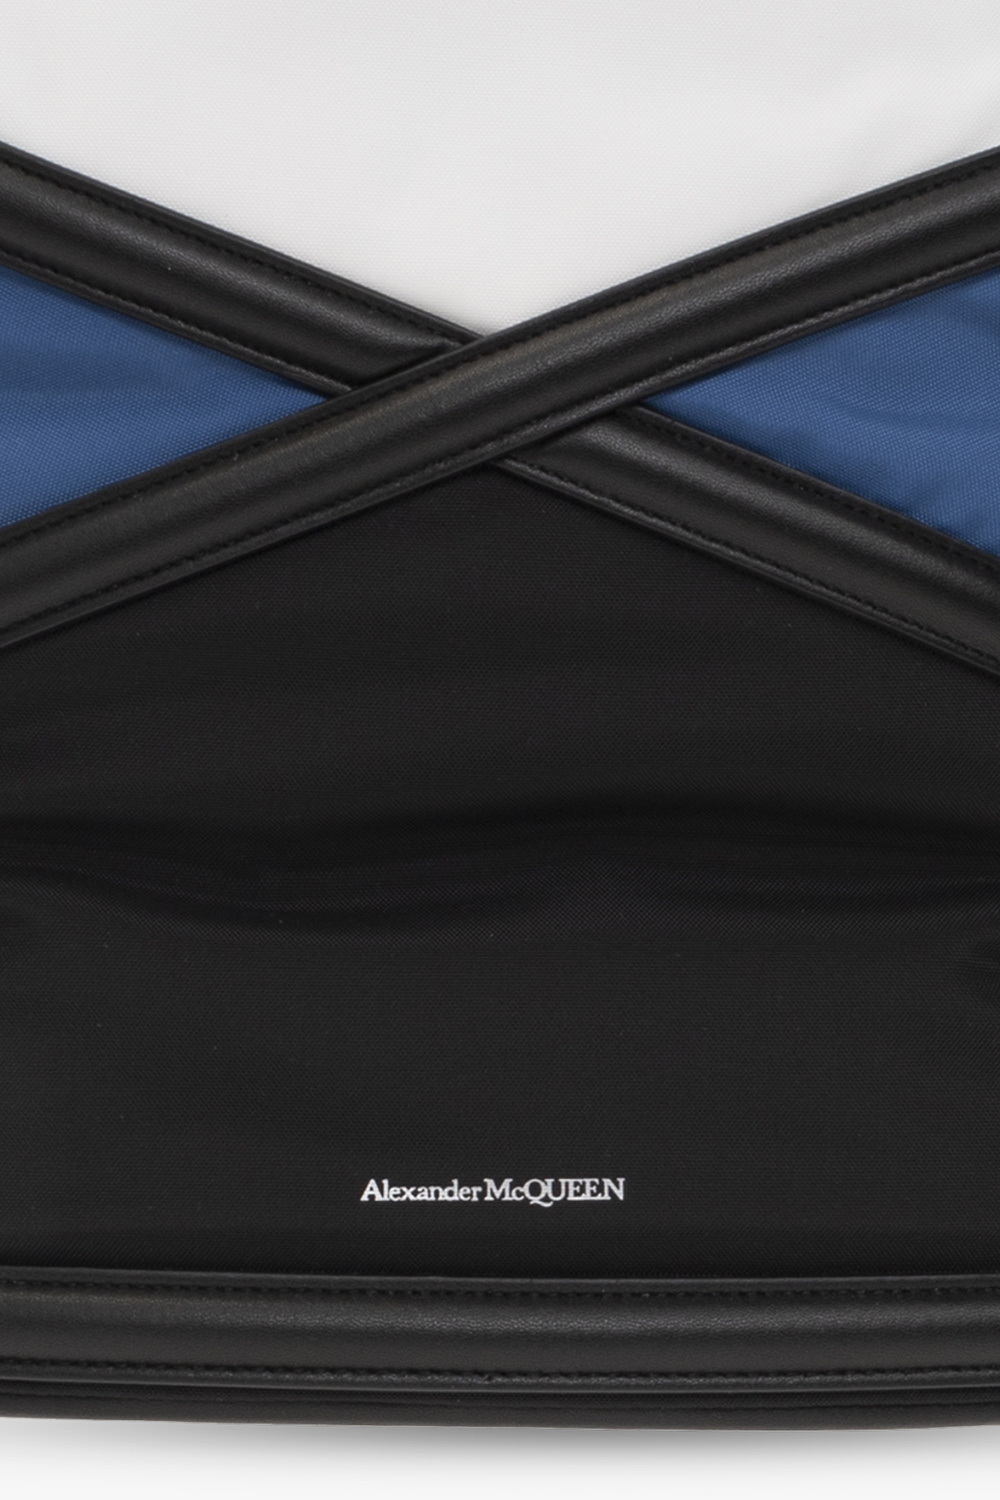 Alexander McQueen Alexander McQueen botanical-print cotton shirtdress